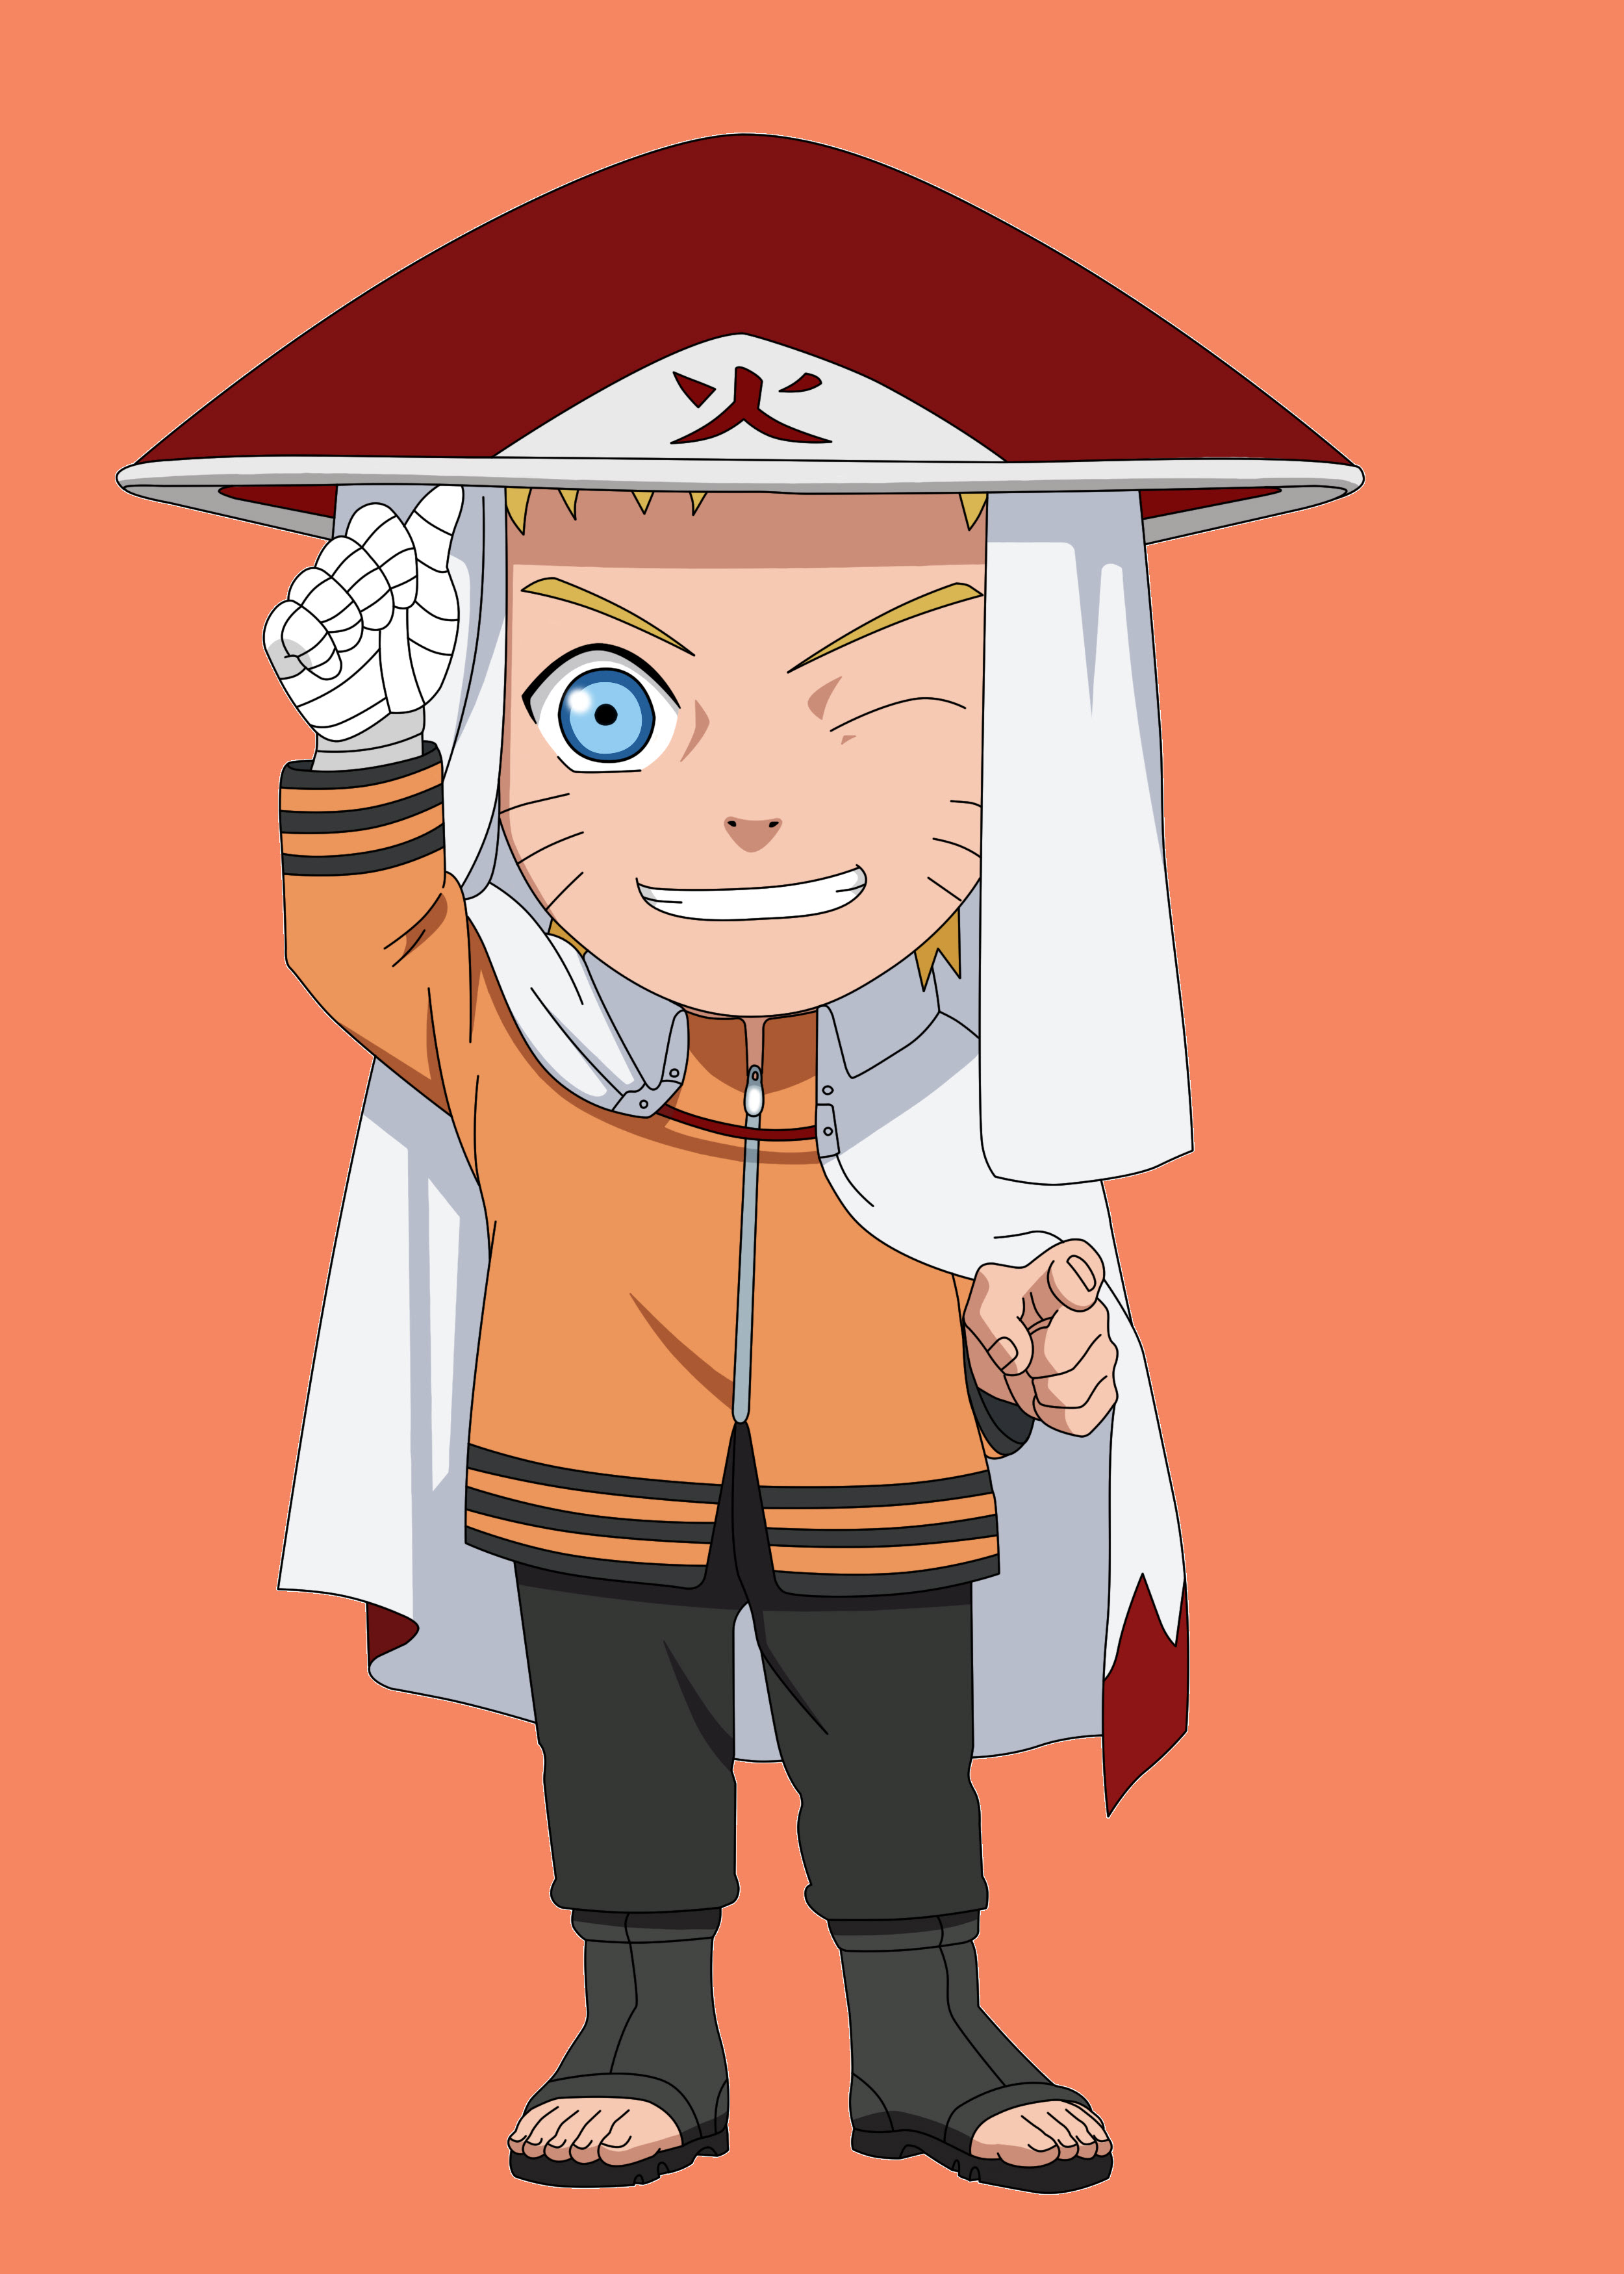 Naruto Chibi - Tổng hợp bức tranh độc đáo về nhân vật Naruto